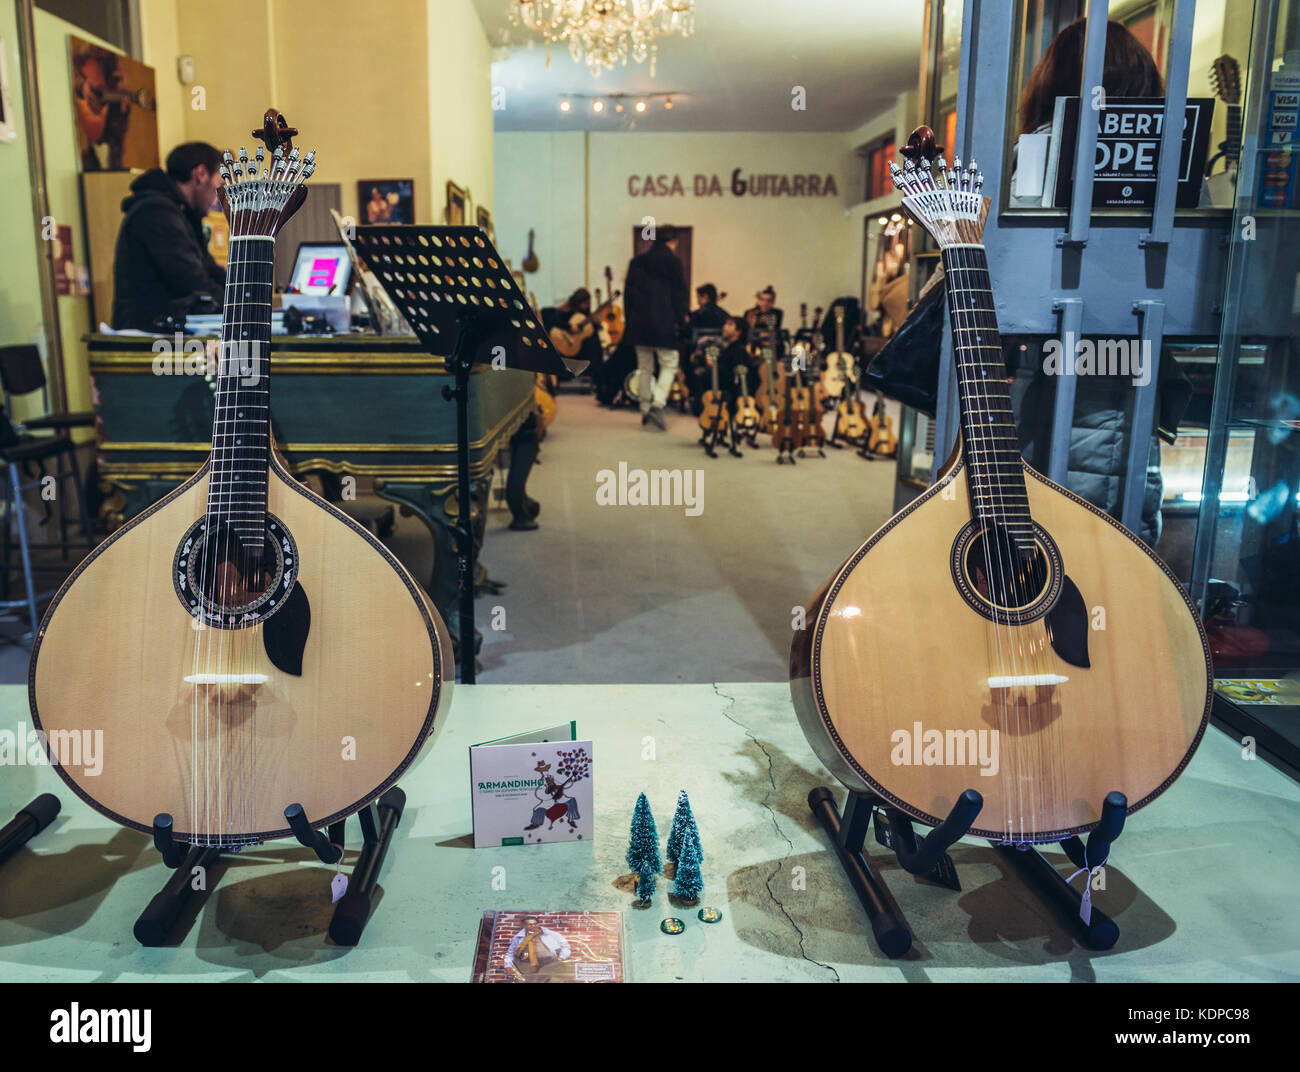 Chitarre portoghesi nel negozio di musica Casa da Guitarra di Porto, sulla penisola iberica, seconda città più grande del Portogallo Foto Stock